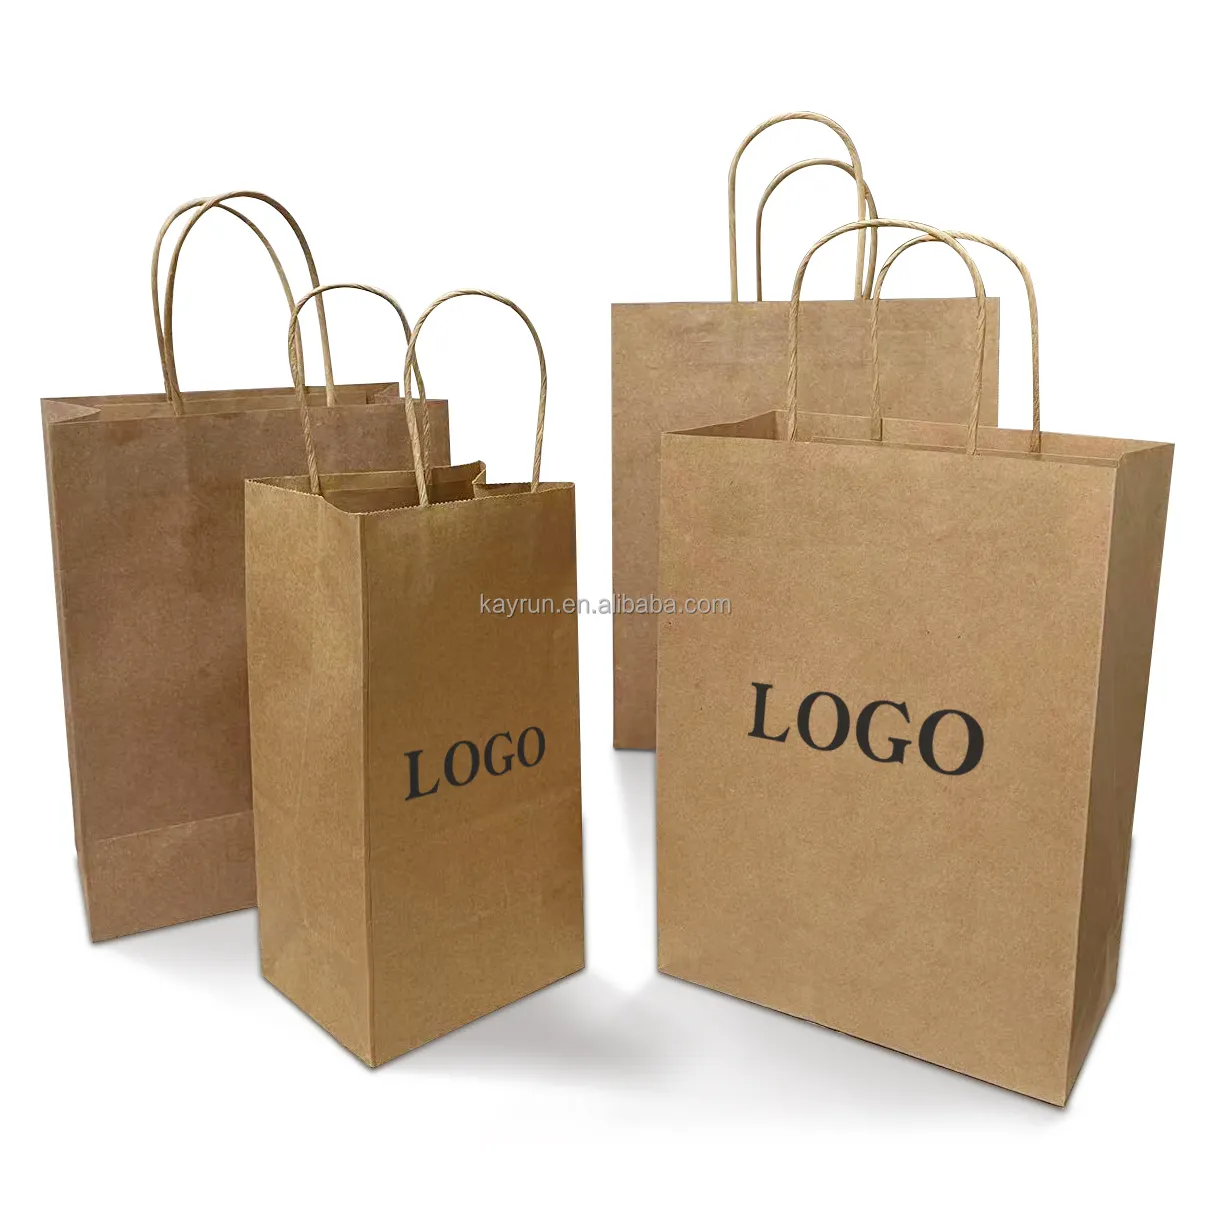 Groothandel Aangepaste Verpakking Kraftpapier Tassen Winkelen Gift Ambachtelijke Papieren Zak Met Uw Eigen Logo Handvat